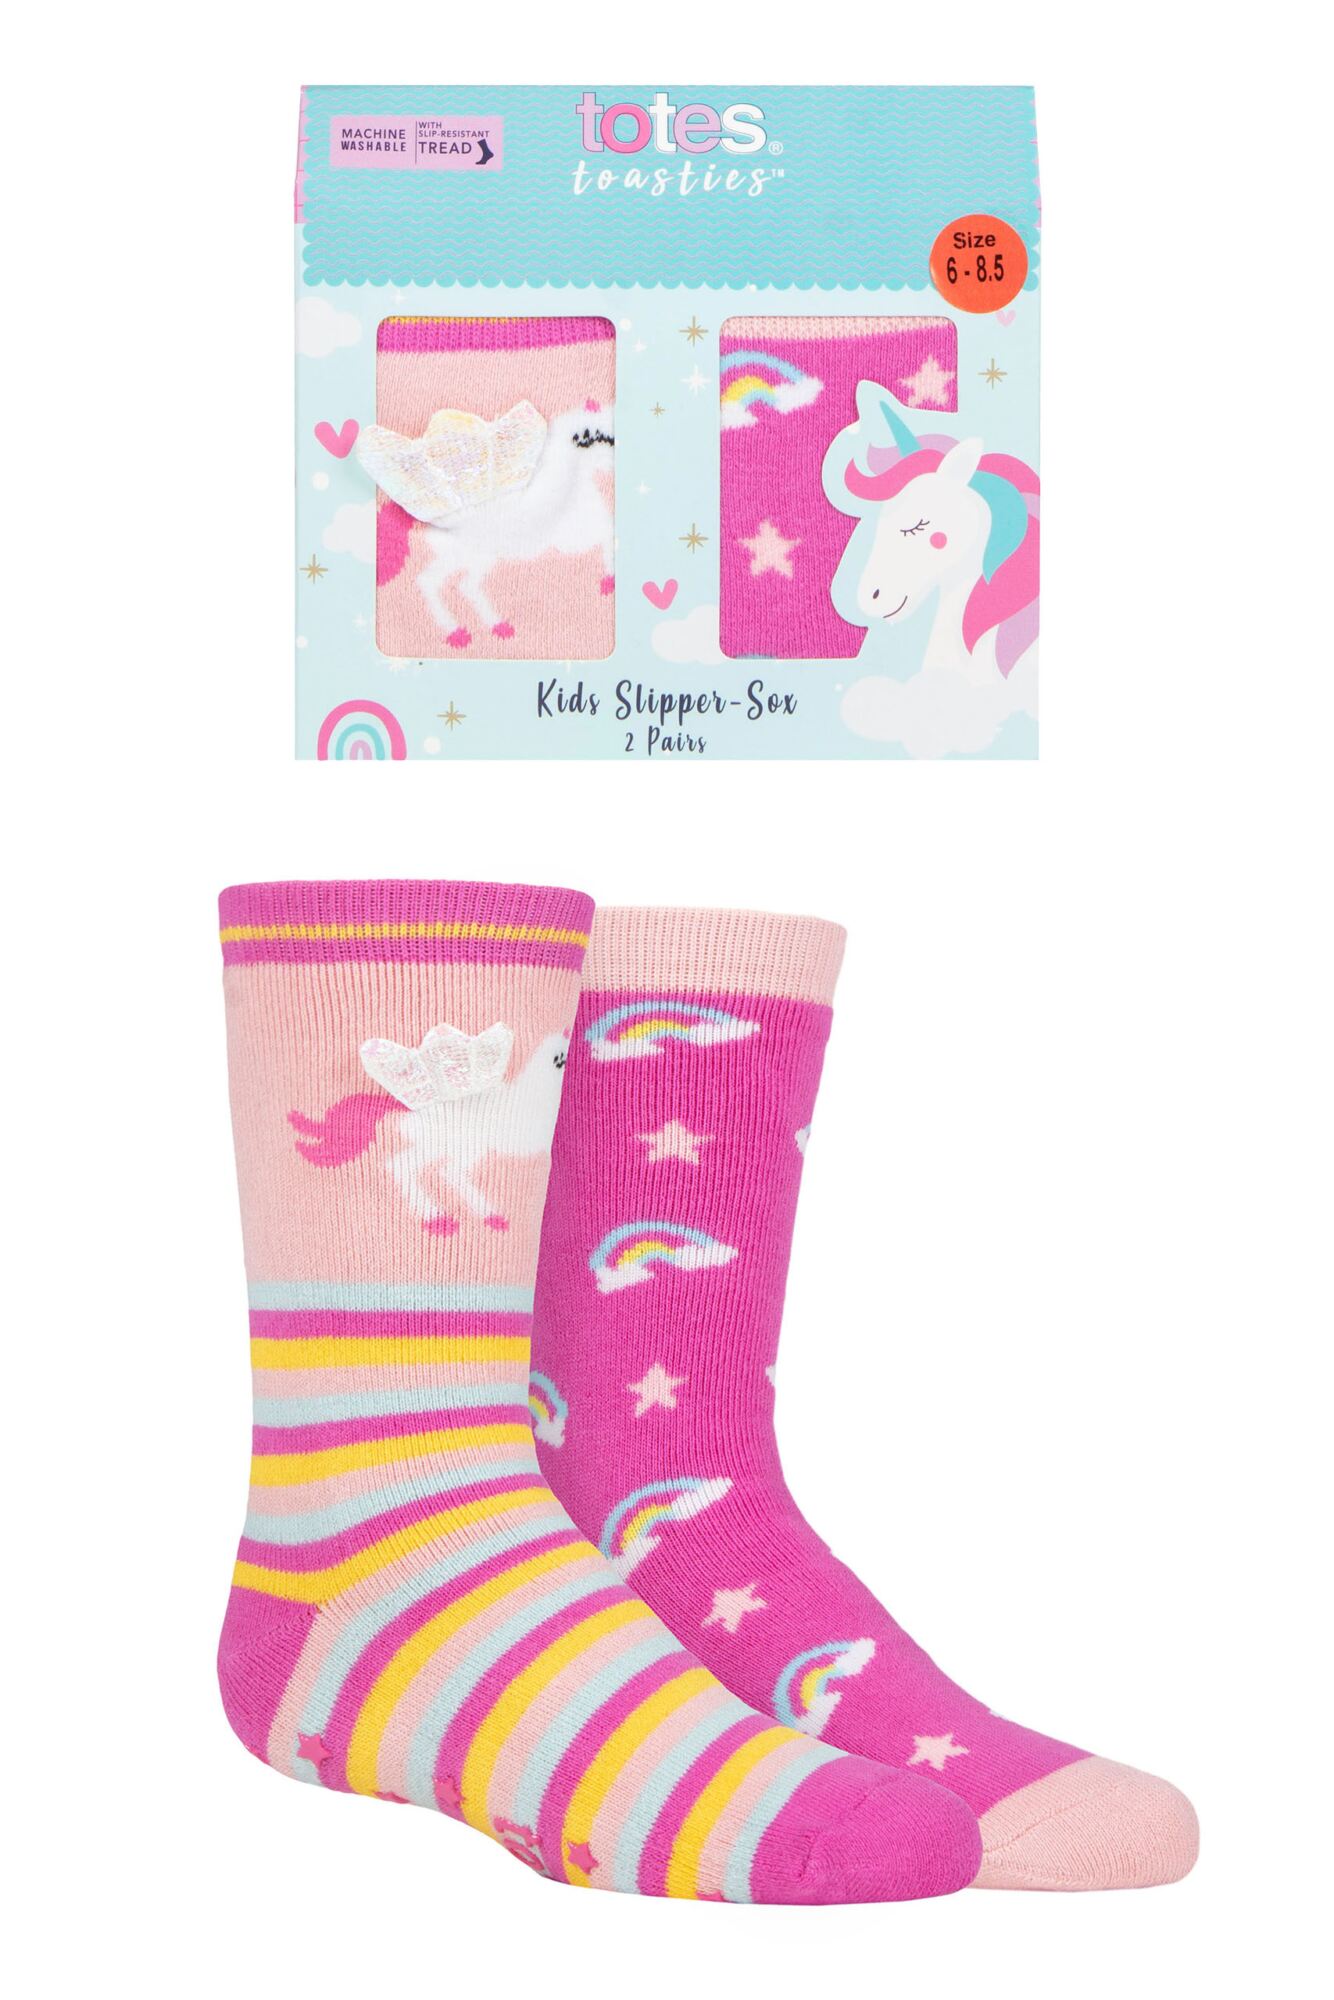 2 Pair Tots Originals Novelty Slipper Socks Girls - Totes